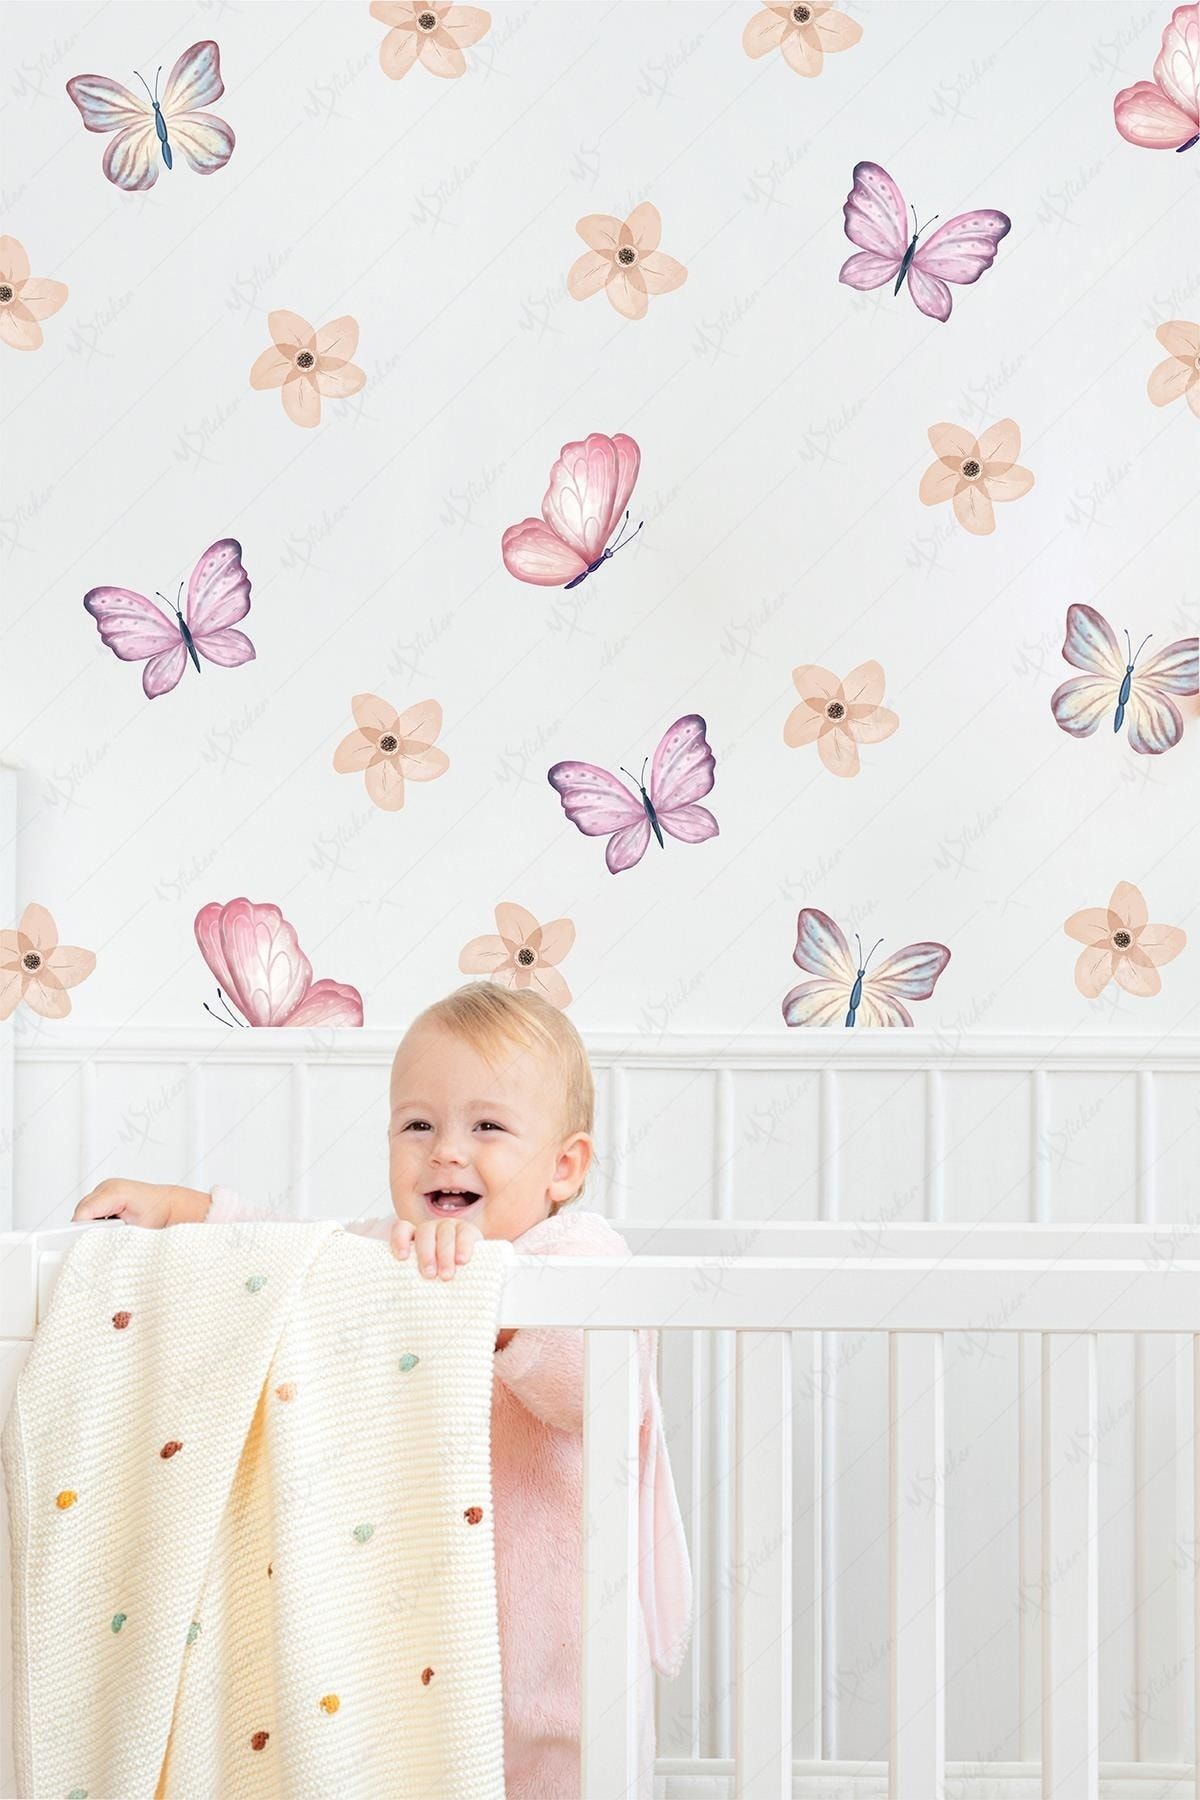 MSticker Soft Renklerde Kelebekler Ve Çiçekler Çocuk Bebek Odası Cam Duvar Sticker Seti